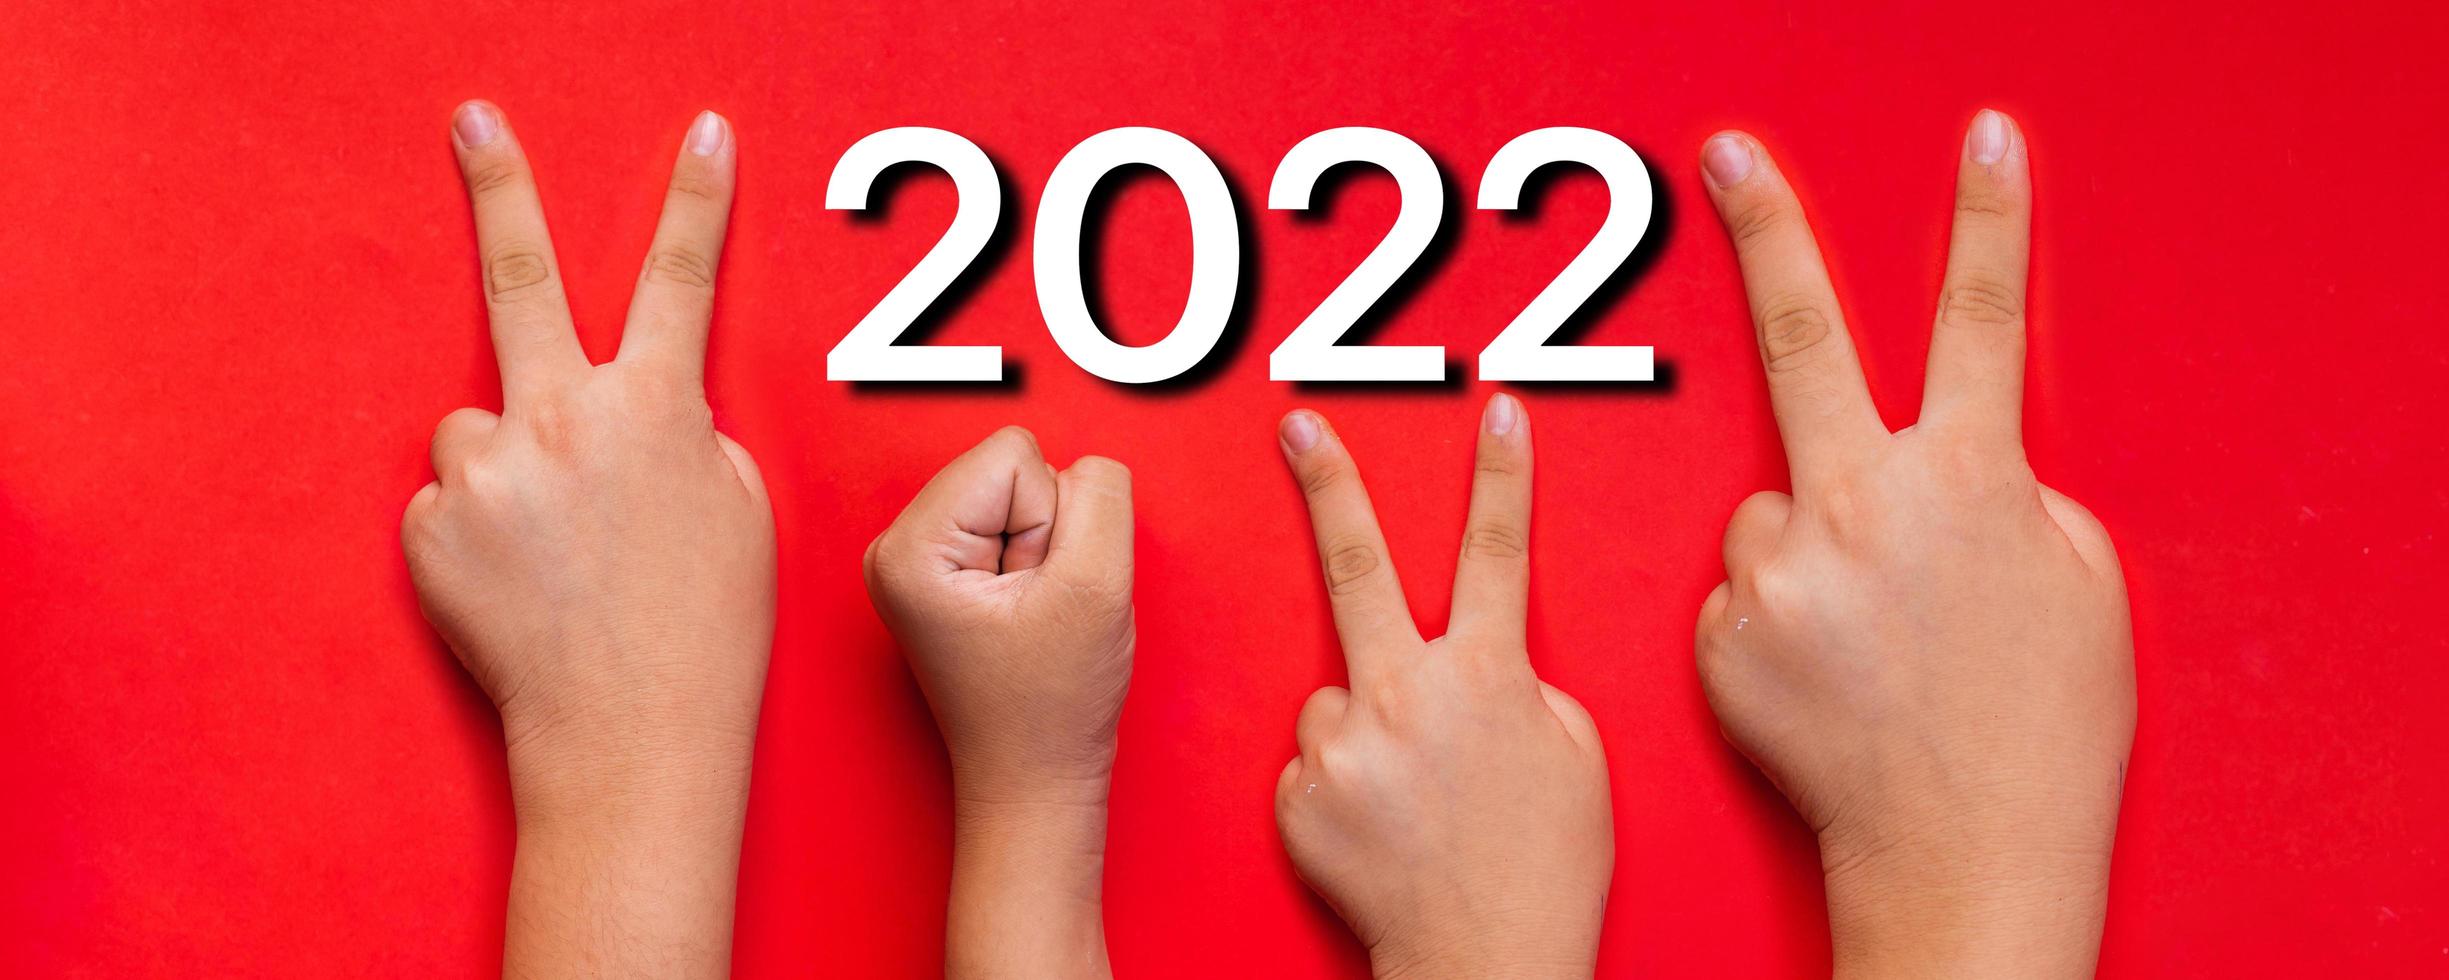 idea y creativo en 2022, símbolo de la mano del dedo del número de año nuevo sobre fondo rojo foto